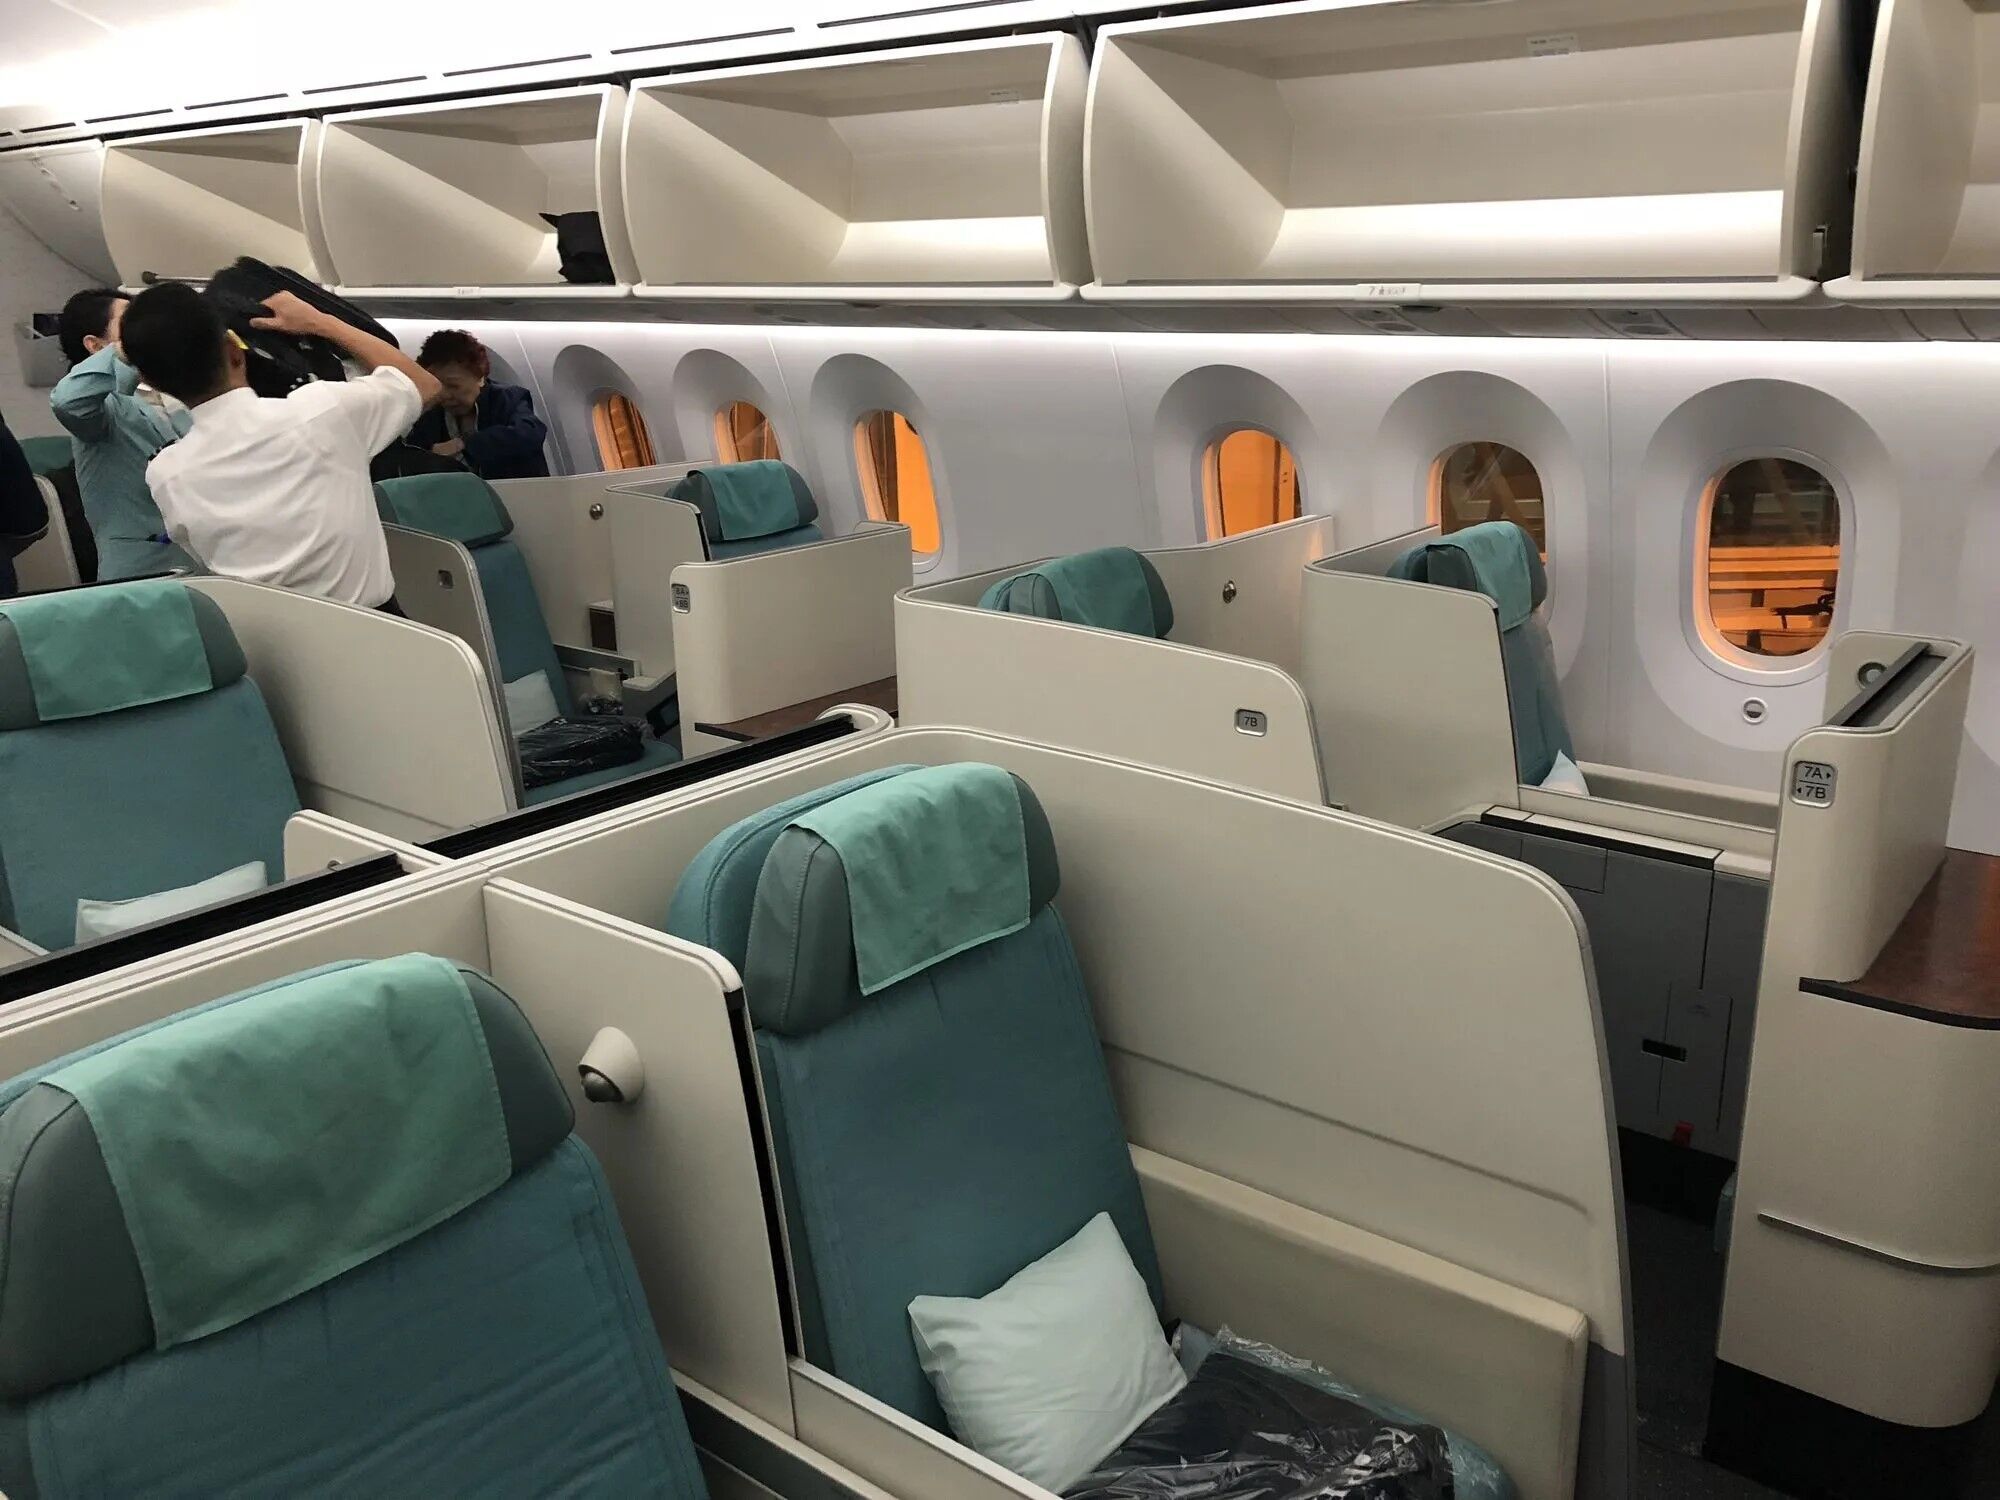 В Южной Корее пассажирка под наркотиками пыталась открыть дверь в самолете во время полета